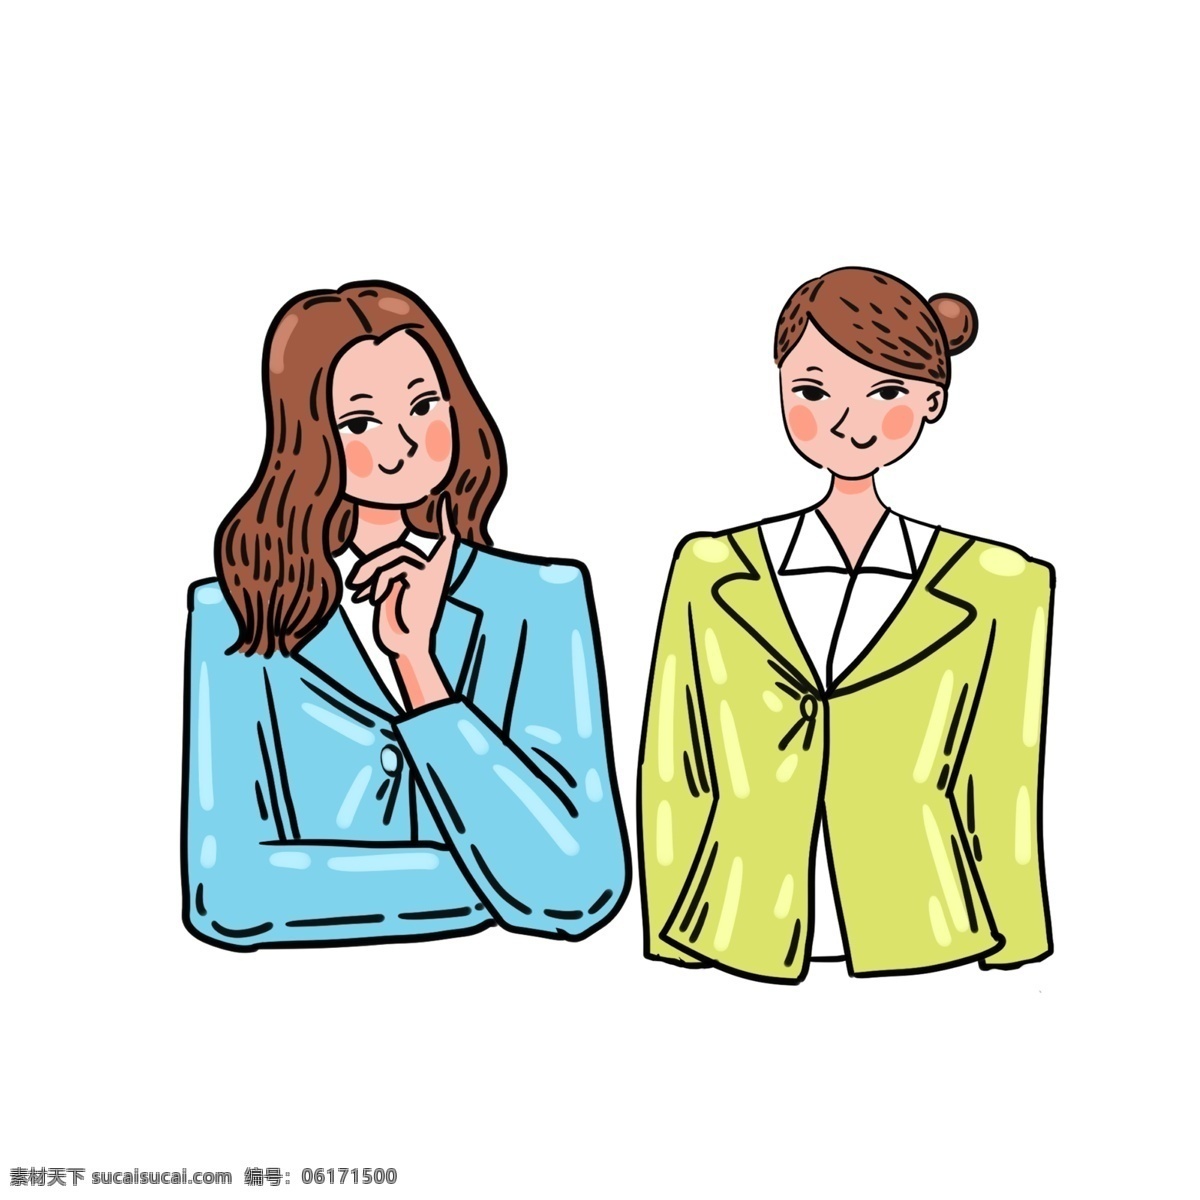 卡通 矢量 免 抠 招聘 人物 免抠 招聘人物 加油 女性 西装 面试 衬衫 蓝色 绿色外套 同事 长发